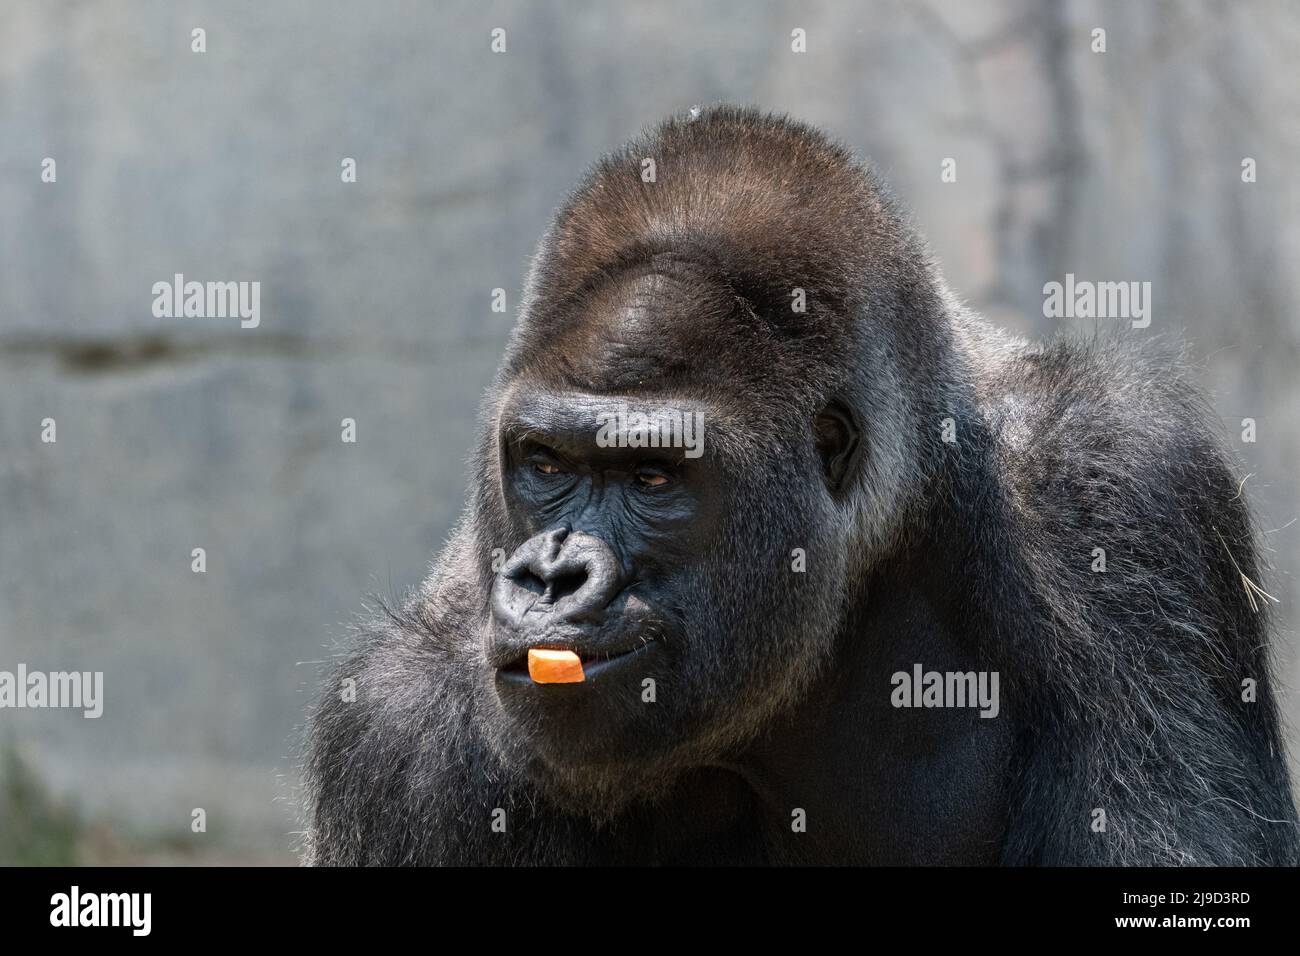 Una gran, intimidante, de plata de atrás Gorilla mirando con atención hacia el lado mientras mastican en un pedazo de zanahoria en su boca. Foto de stock